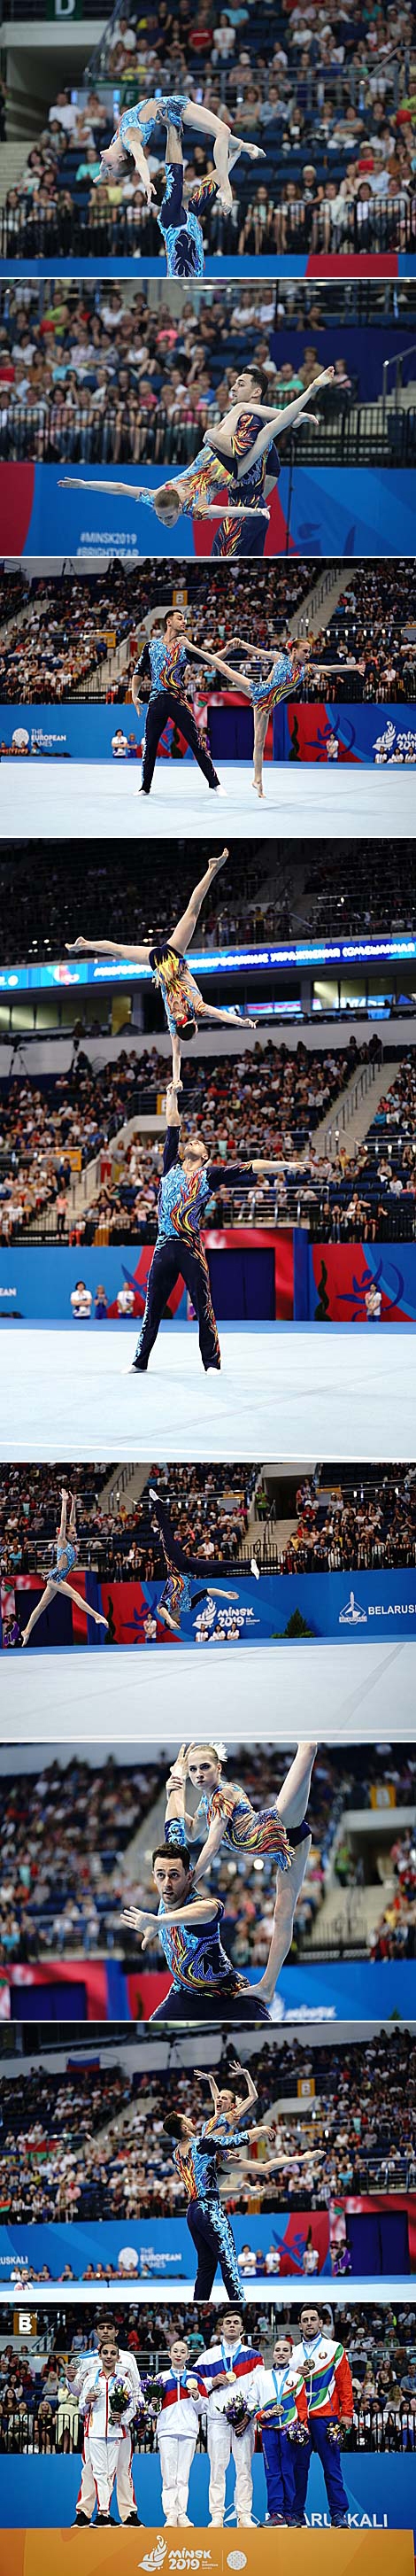 白罗斯超级特技柔软体操运动员亚瑟•别利亚科夫和奥丽嘉•梅利尼克在欧运会上获得体操全能铜牌